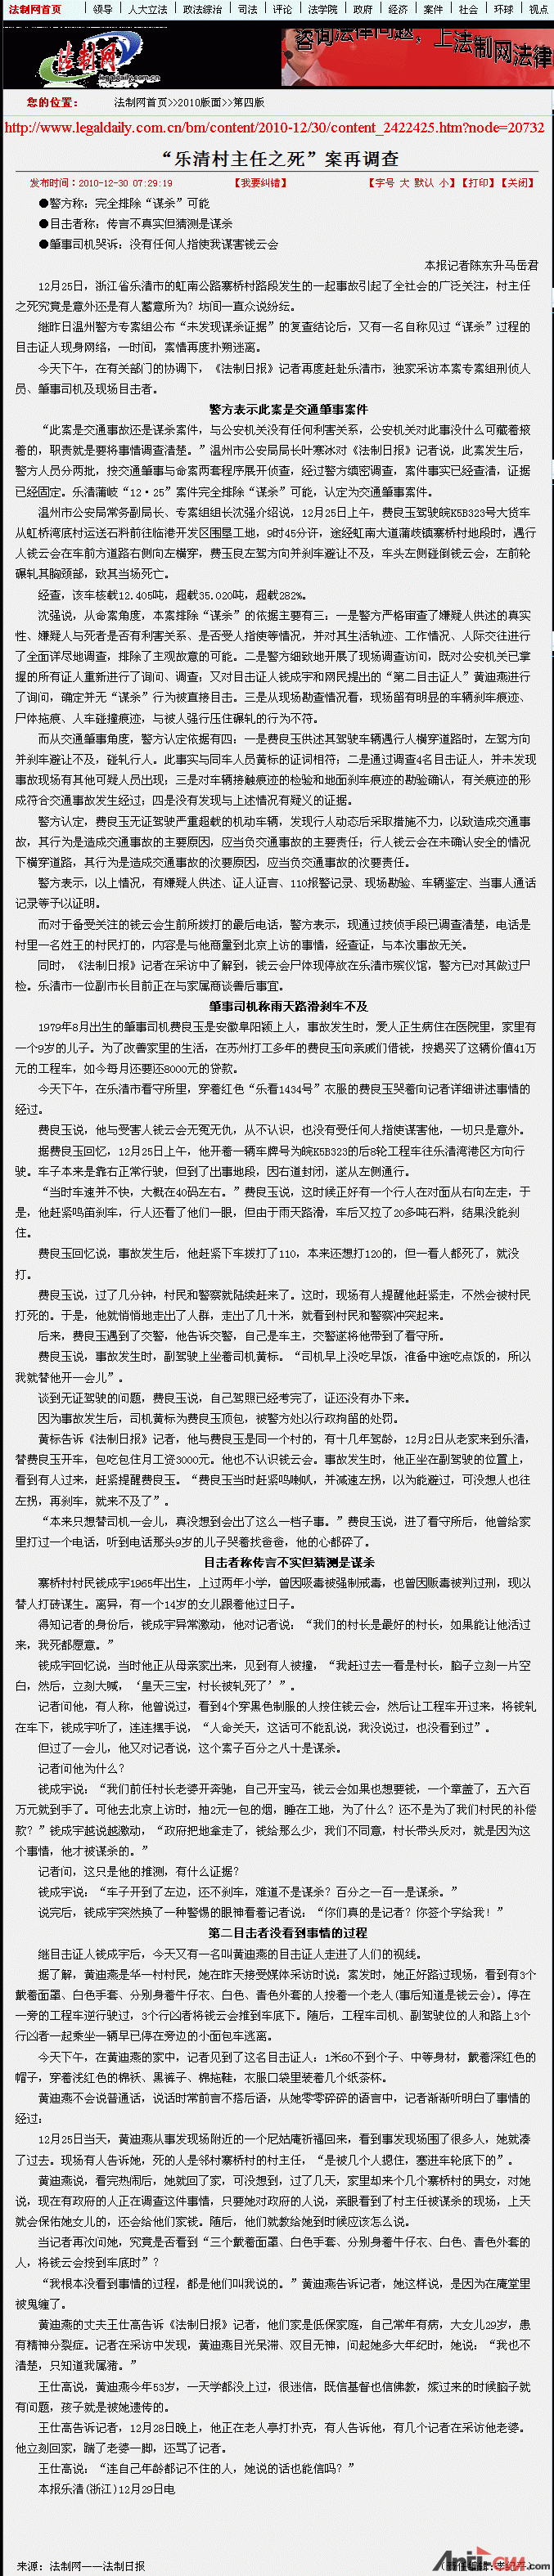 法制网-法制日报.gif